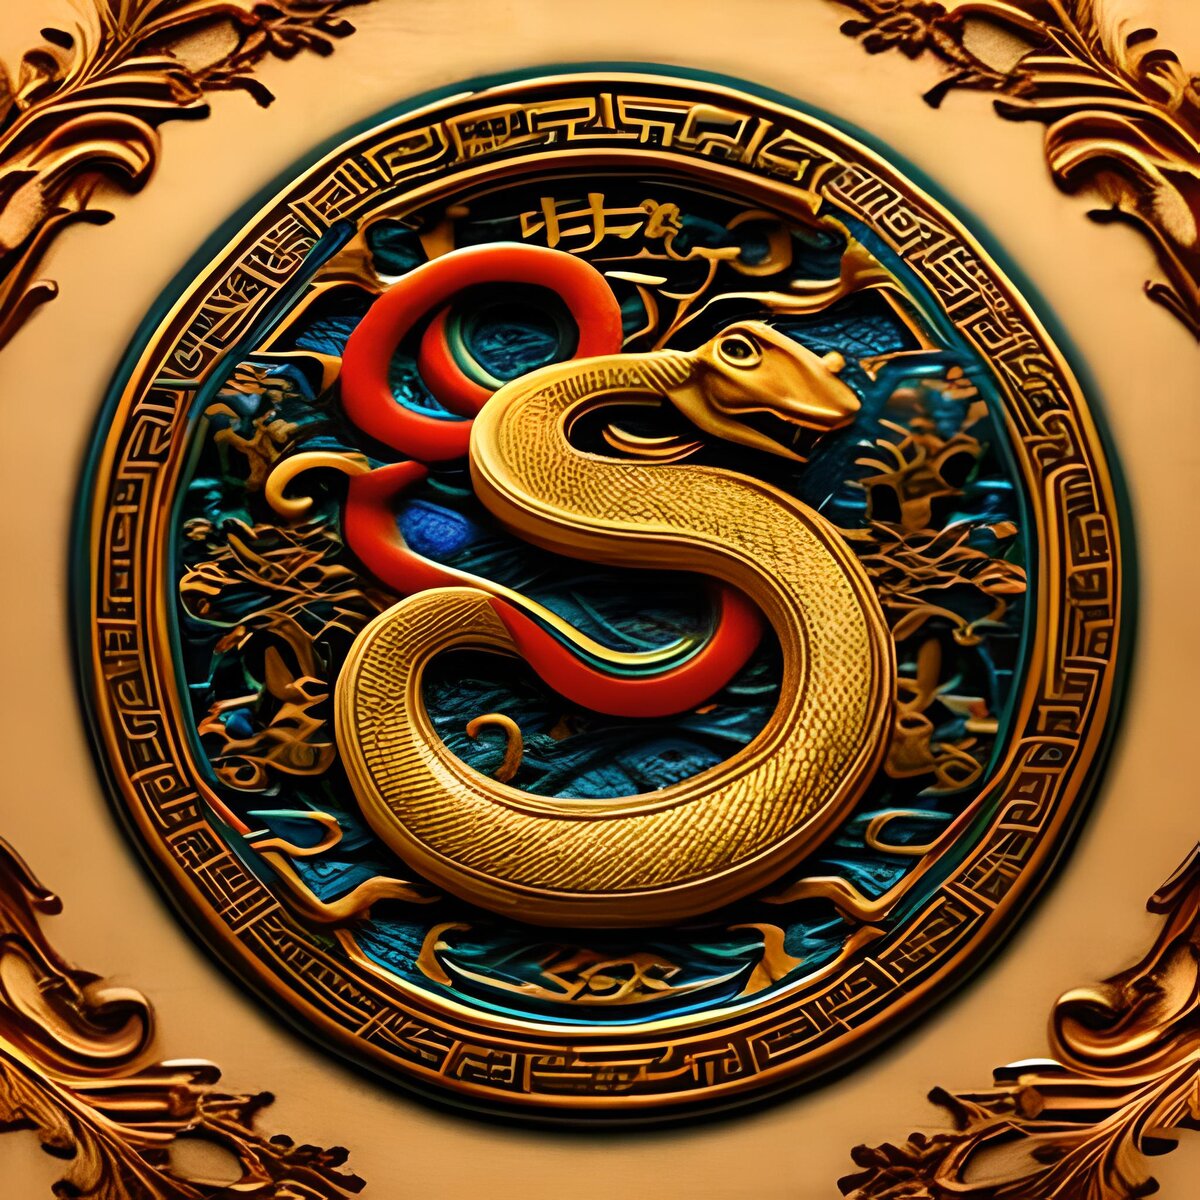 Китайский гороскоп змея. Дракон китайский Зодиак. Символы Китая. Астрологическая змея. Драконы в Восточном стиле от нейросетей.